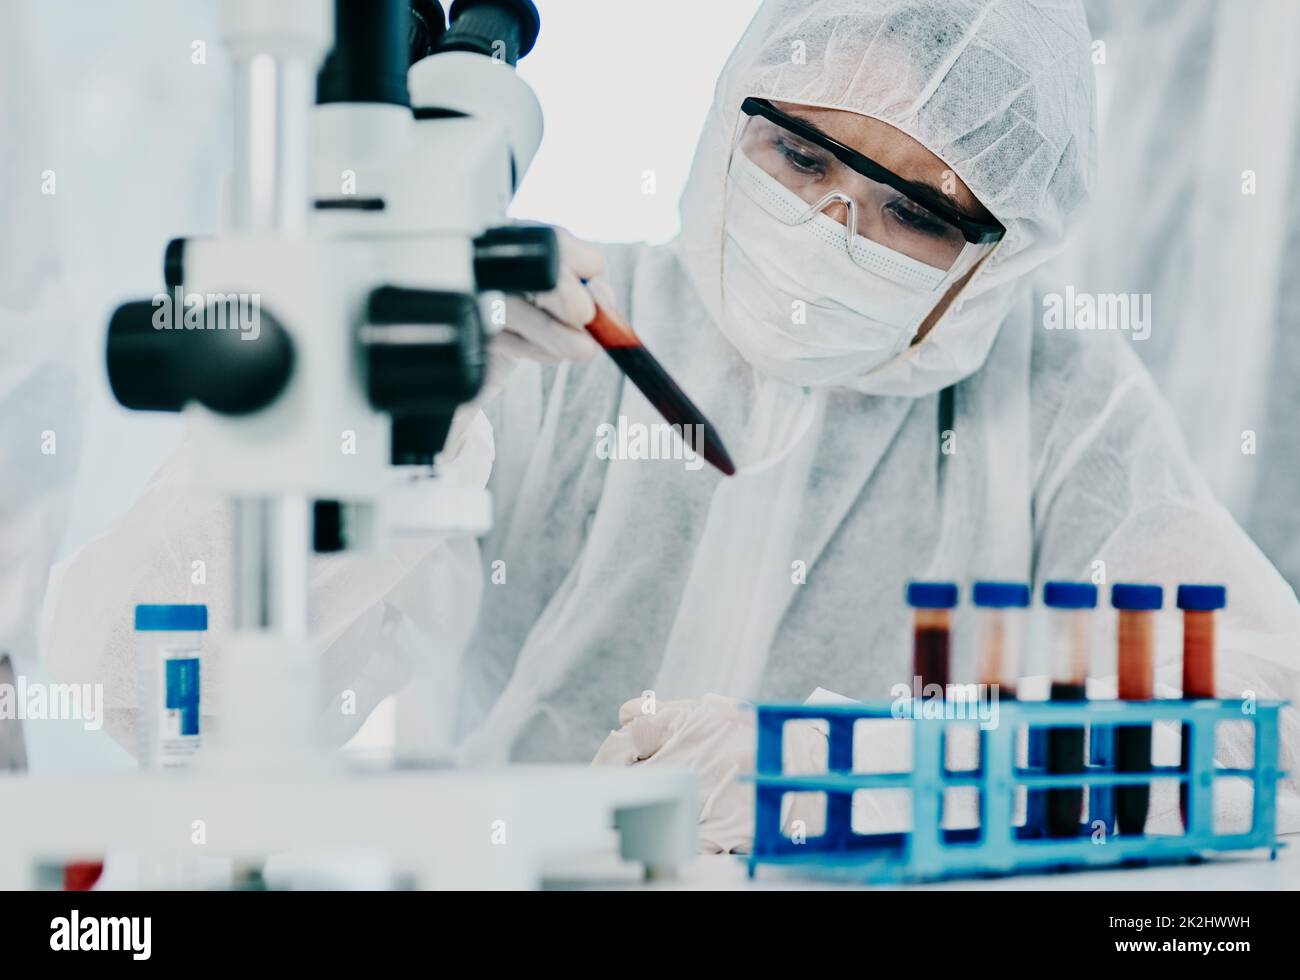 Les réponses sont dans les détails.Photo d'un scientifique en costume de noisette menant des recherches médicales dans un laboratoire. Banque D'Images